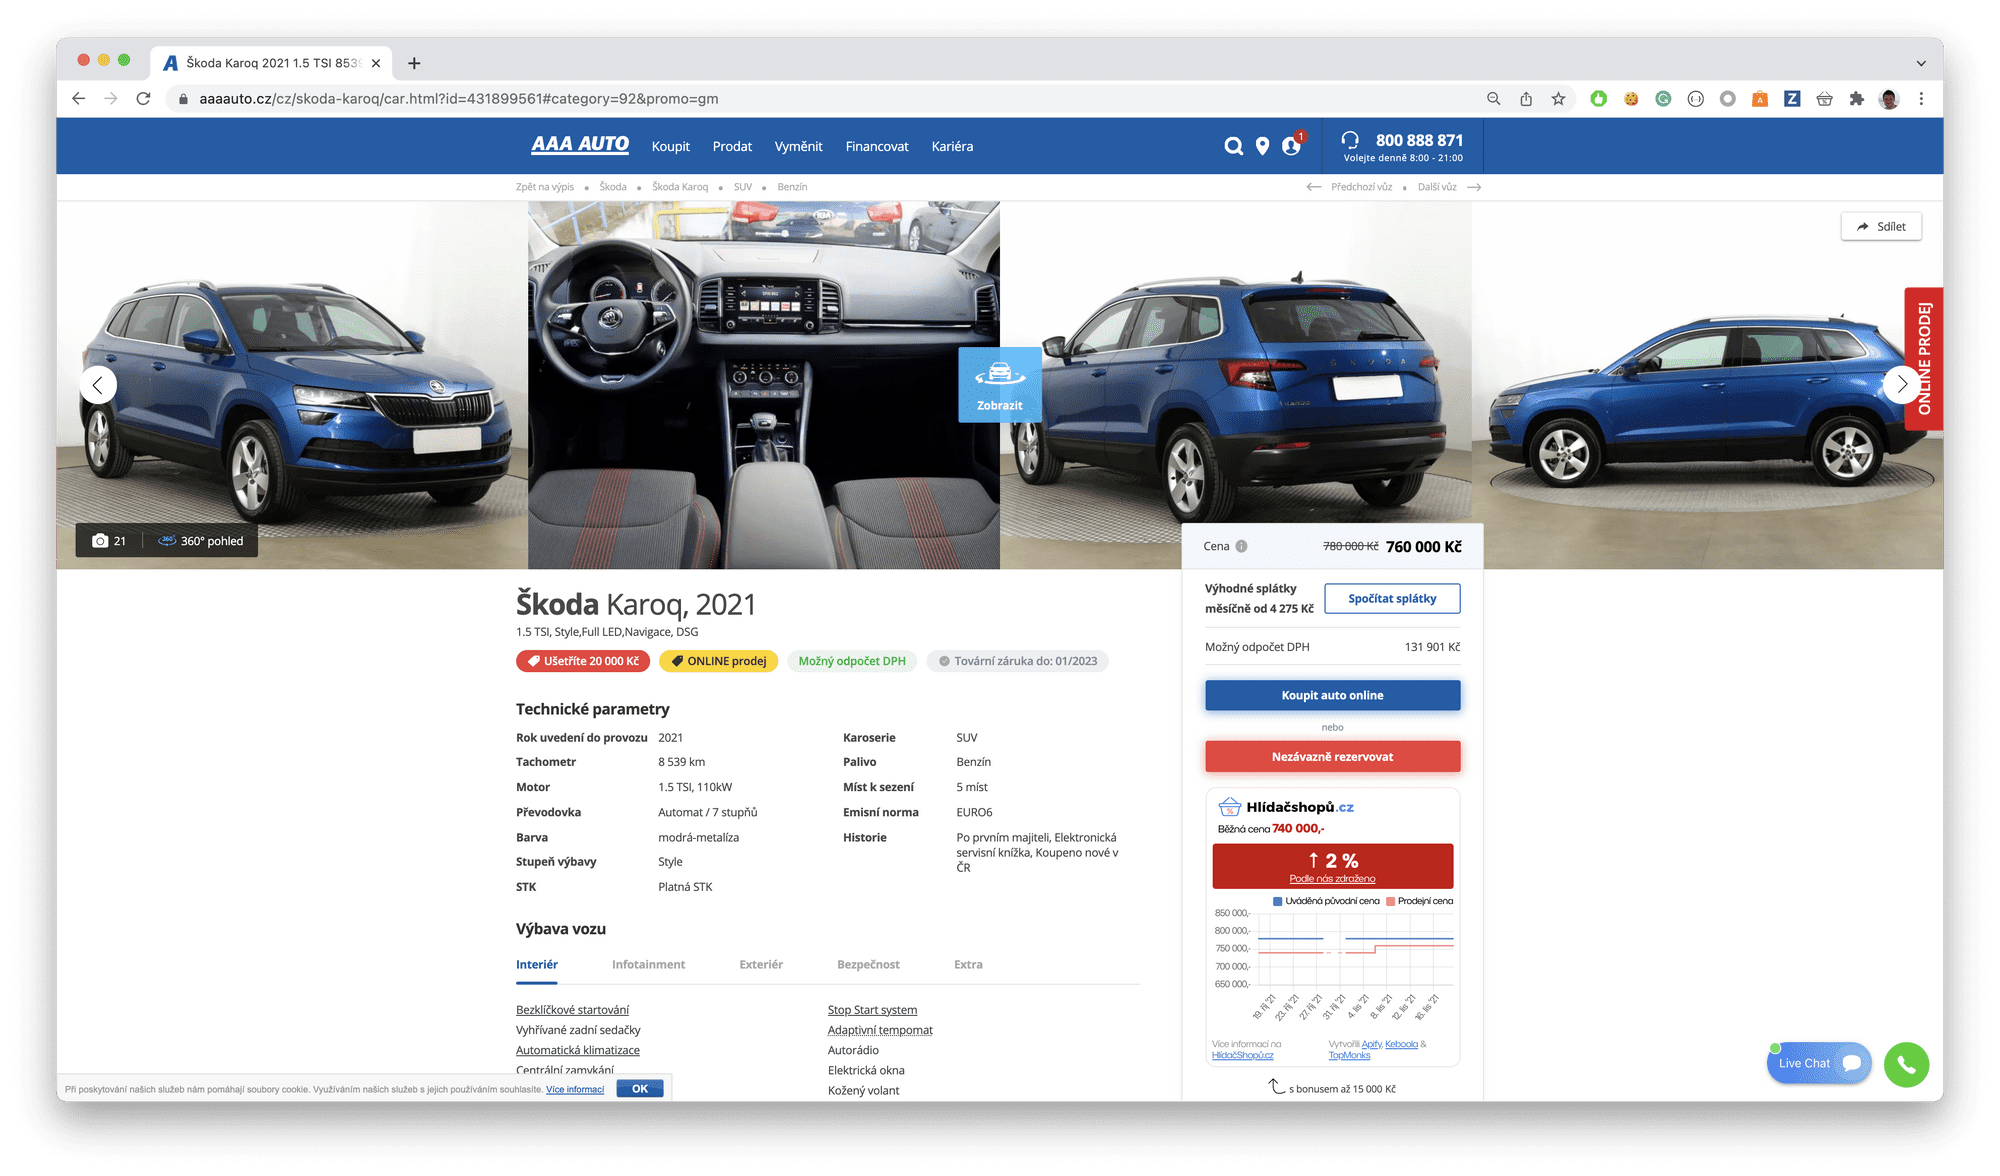 Online offer for skoda car.